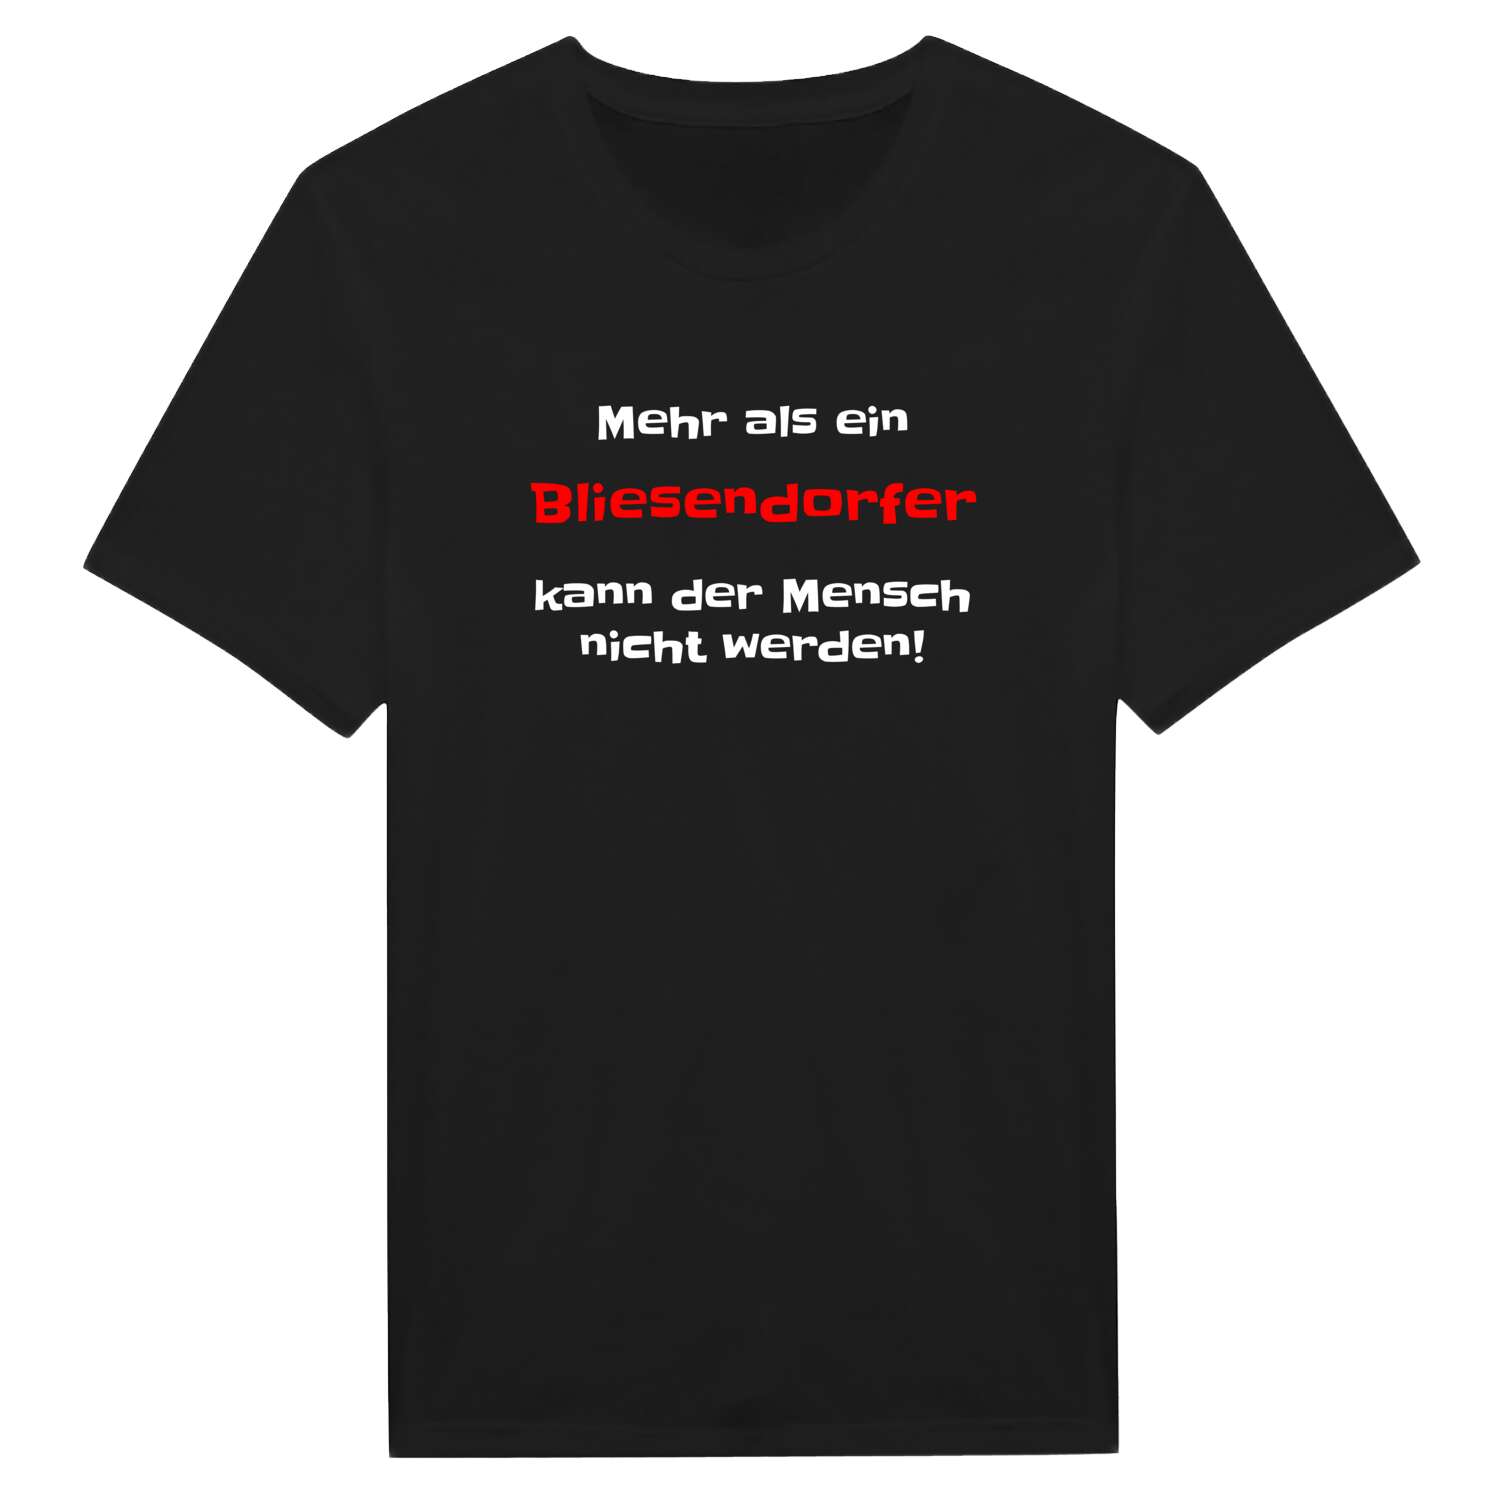 Bliesendorf T-Shirt »Mehr als ein«